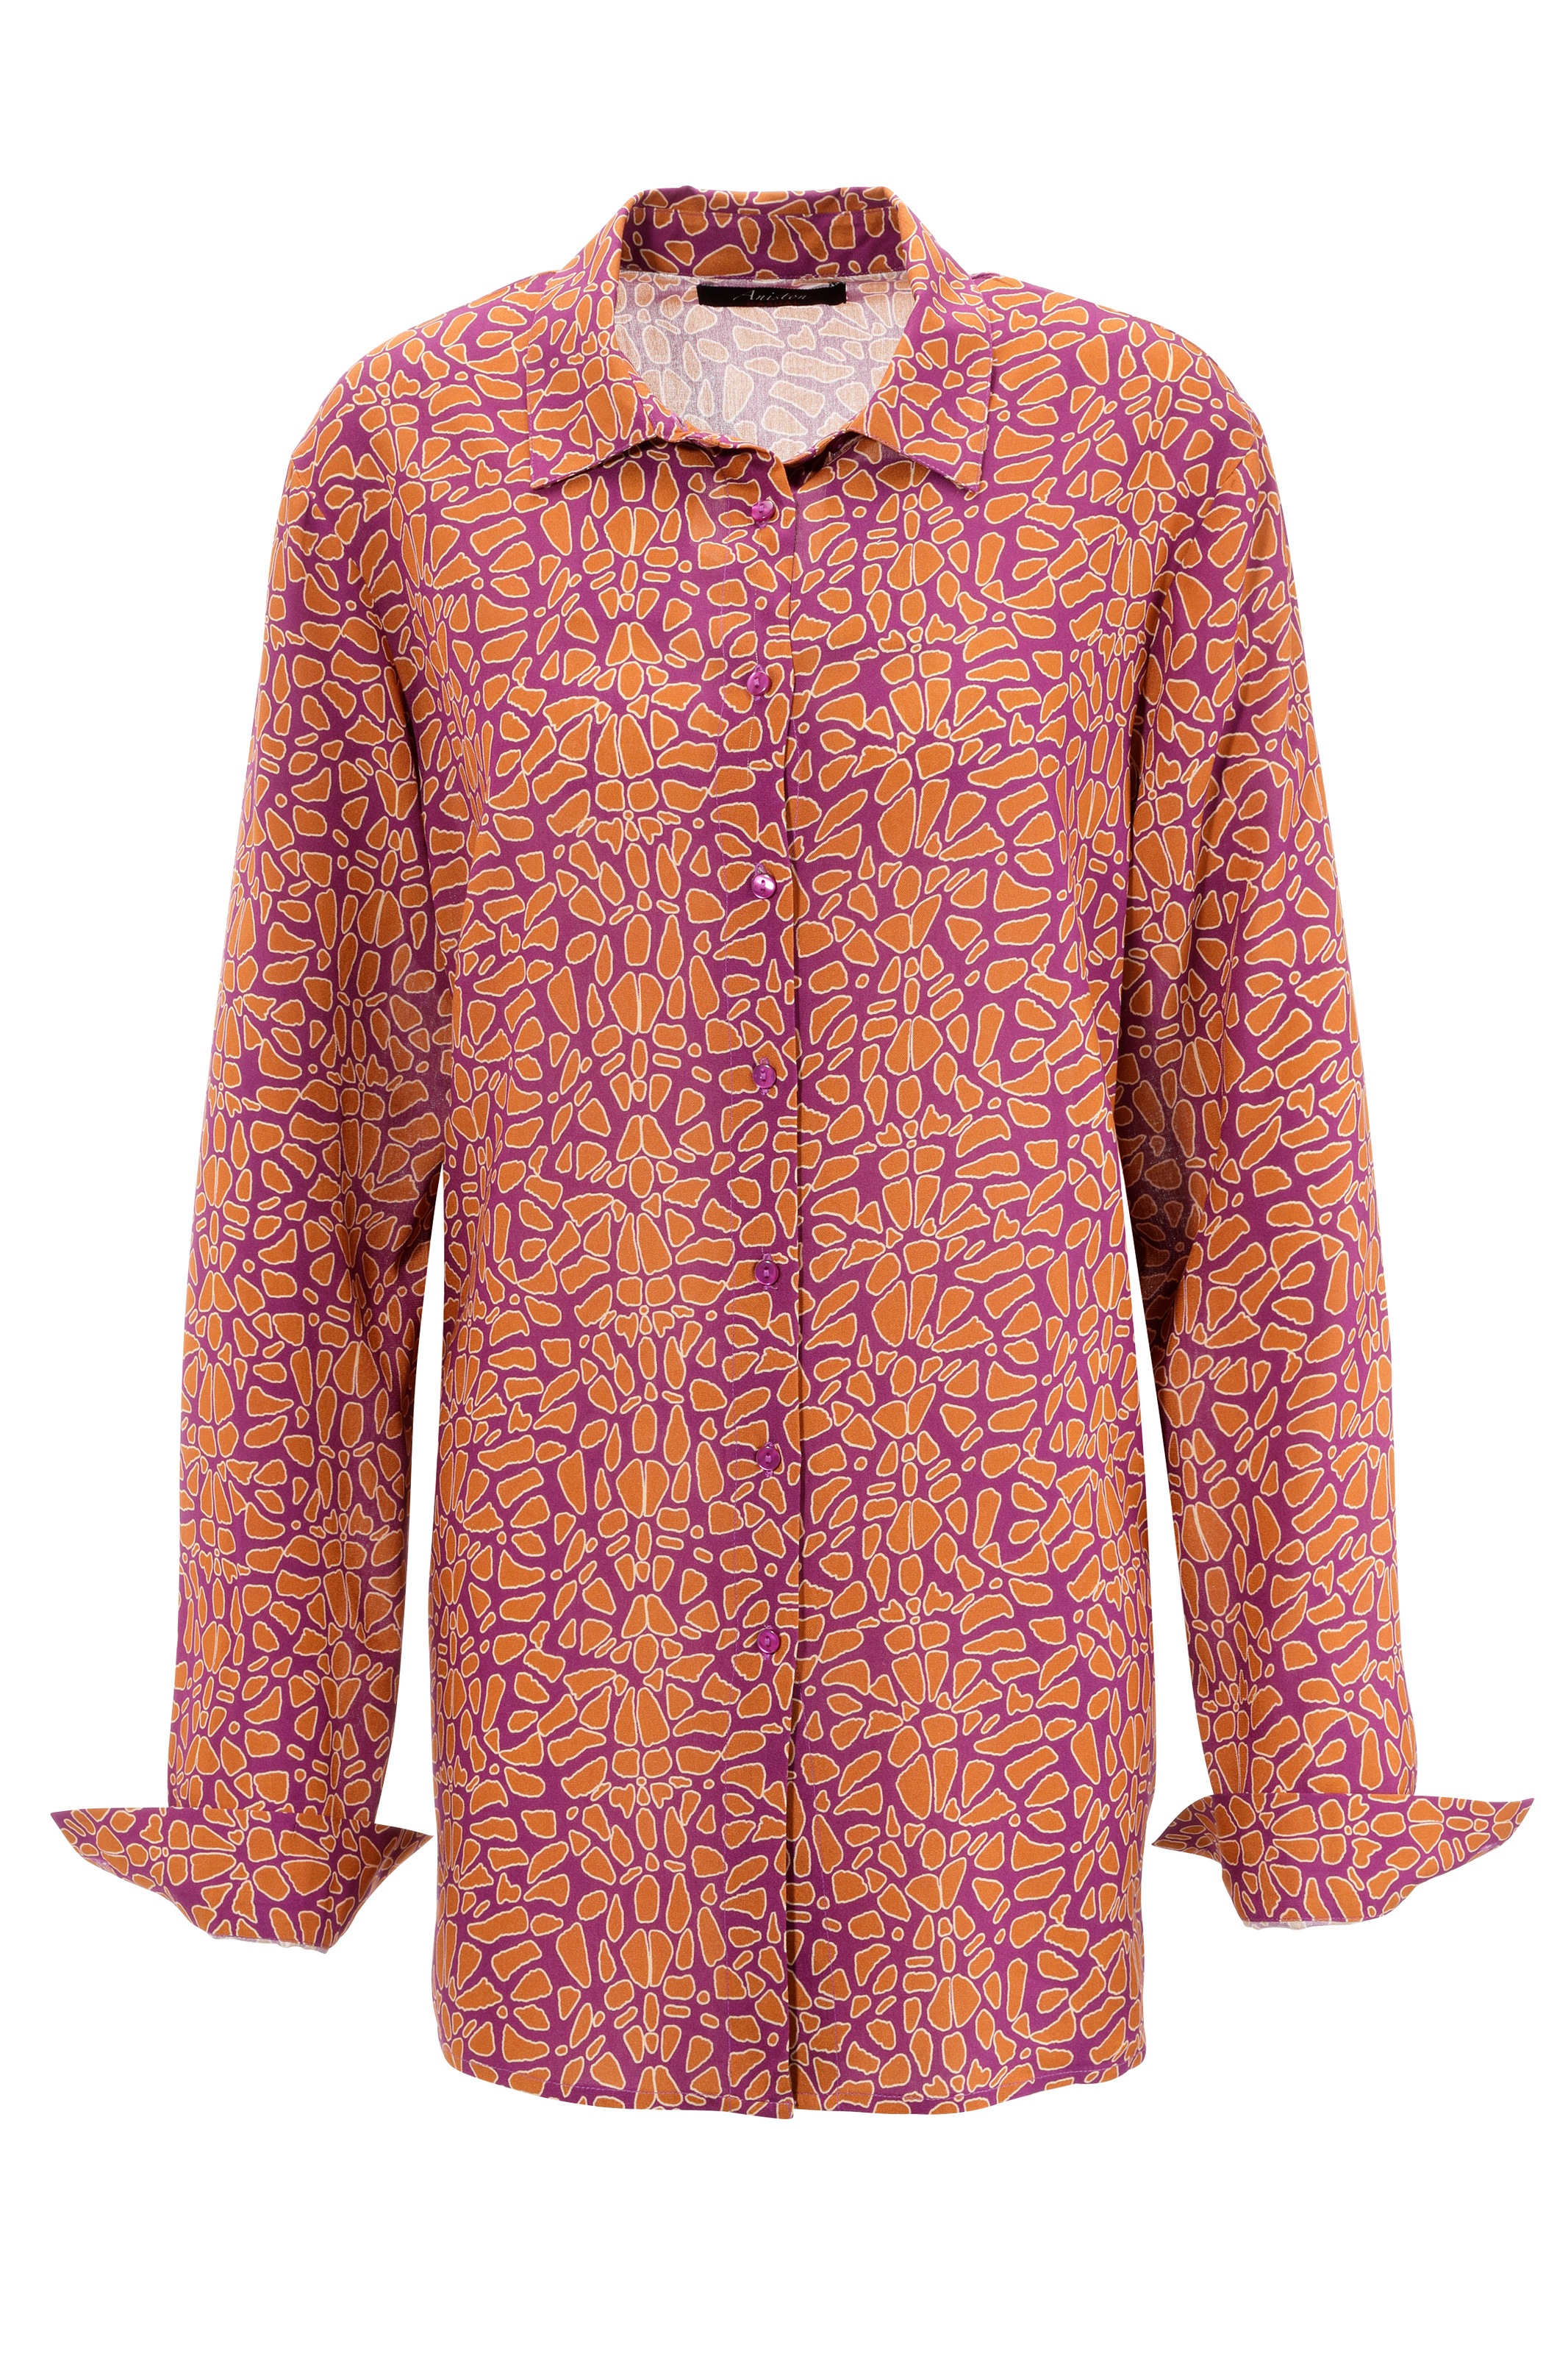 Aniston CASUAL Hemdbluse, mit Druck graphischem kaufen trendfarbenem, online